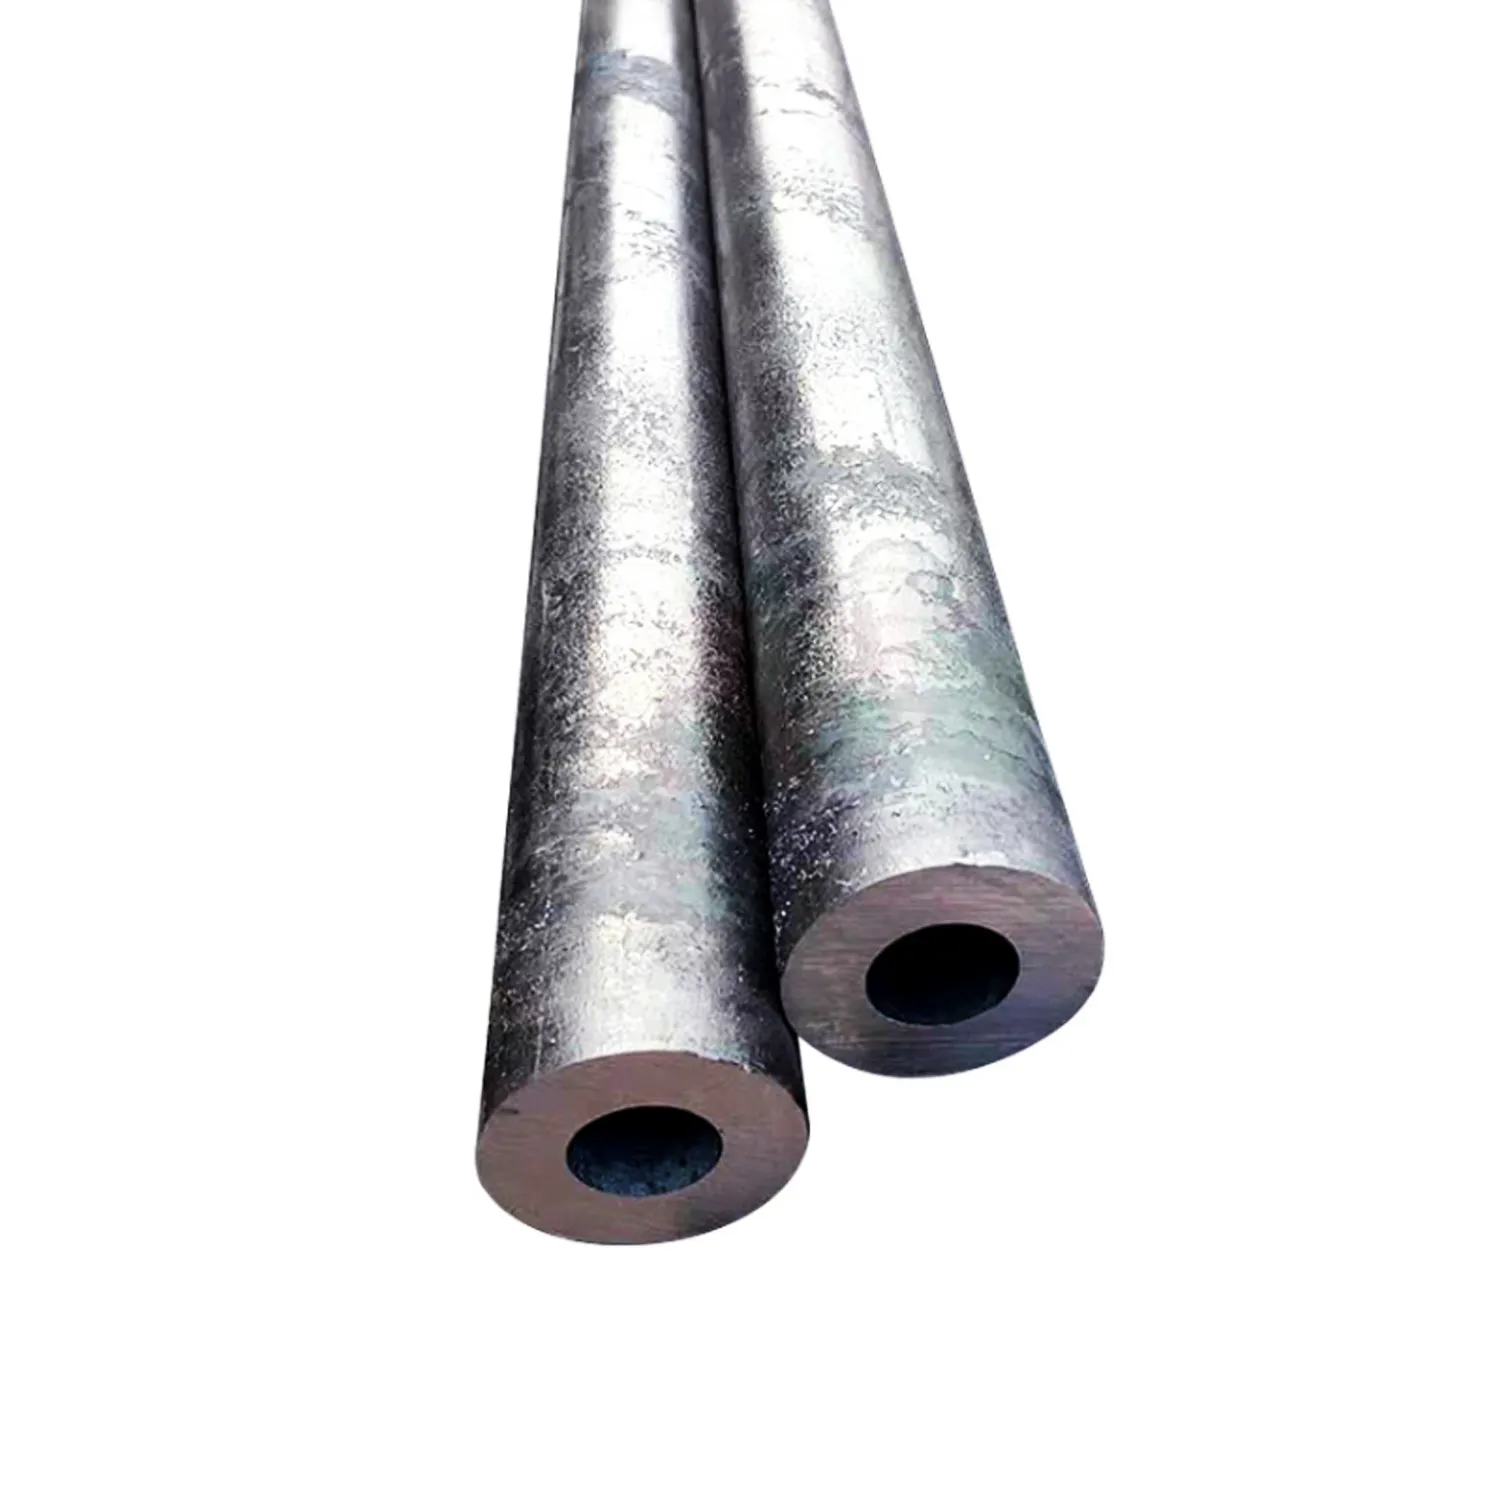 EN GB ASTM JIS programma STANDARD 40 ASTM A53 Gr. B tubo in acciaio al carbonio senza saldatura utilizzato per il gasdotto e il petrolio